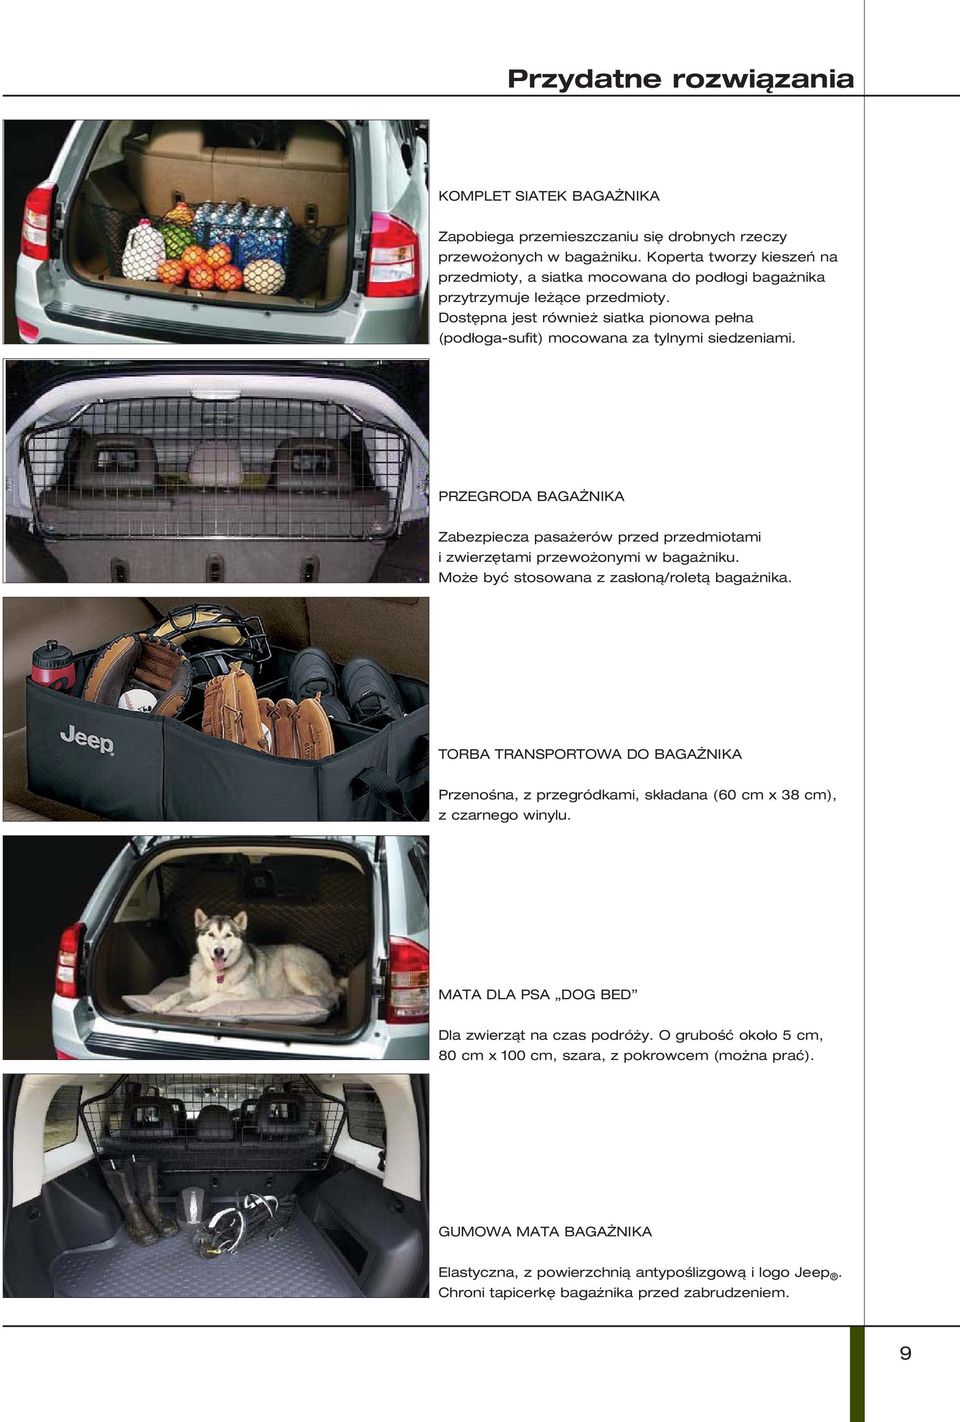 PRZEGRODA BAGAŻNIKA Zabezpiecza pasażerów przed przedmiotami i zwierzętami przewożonymi w bagażniku. Może być stosowana z zasłoną/roletą bagażnika.